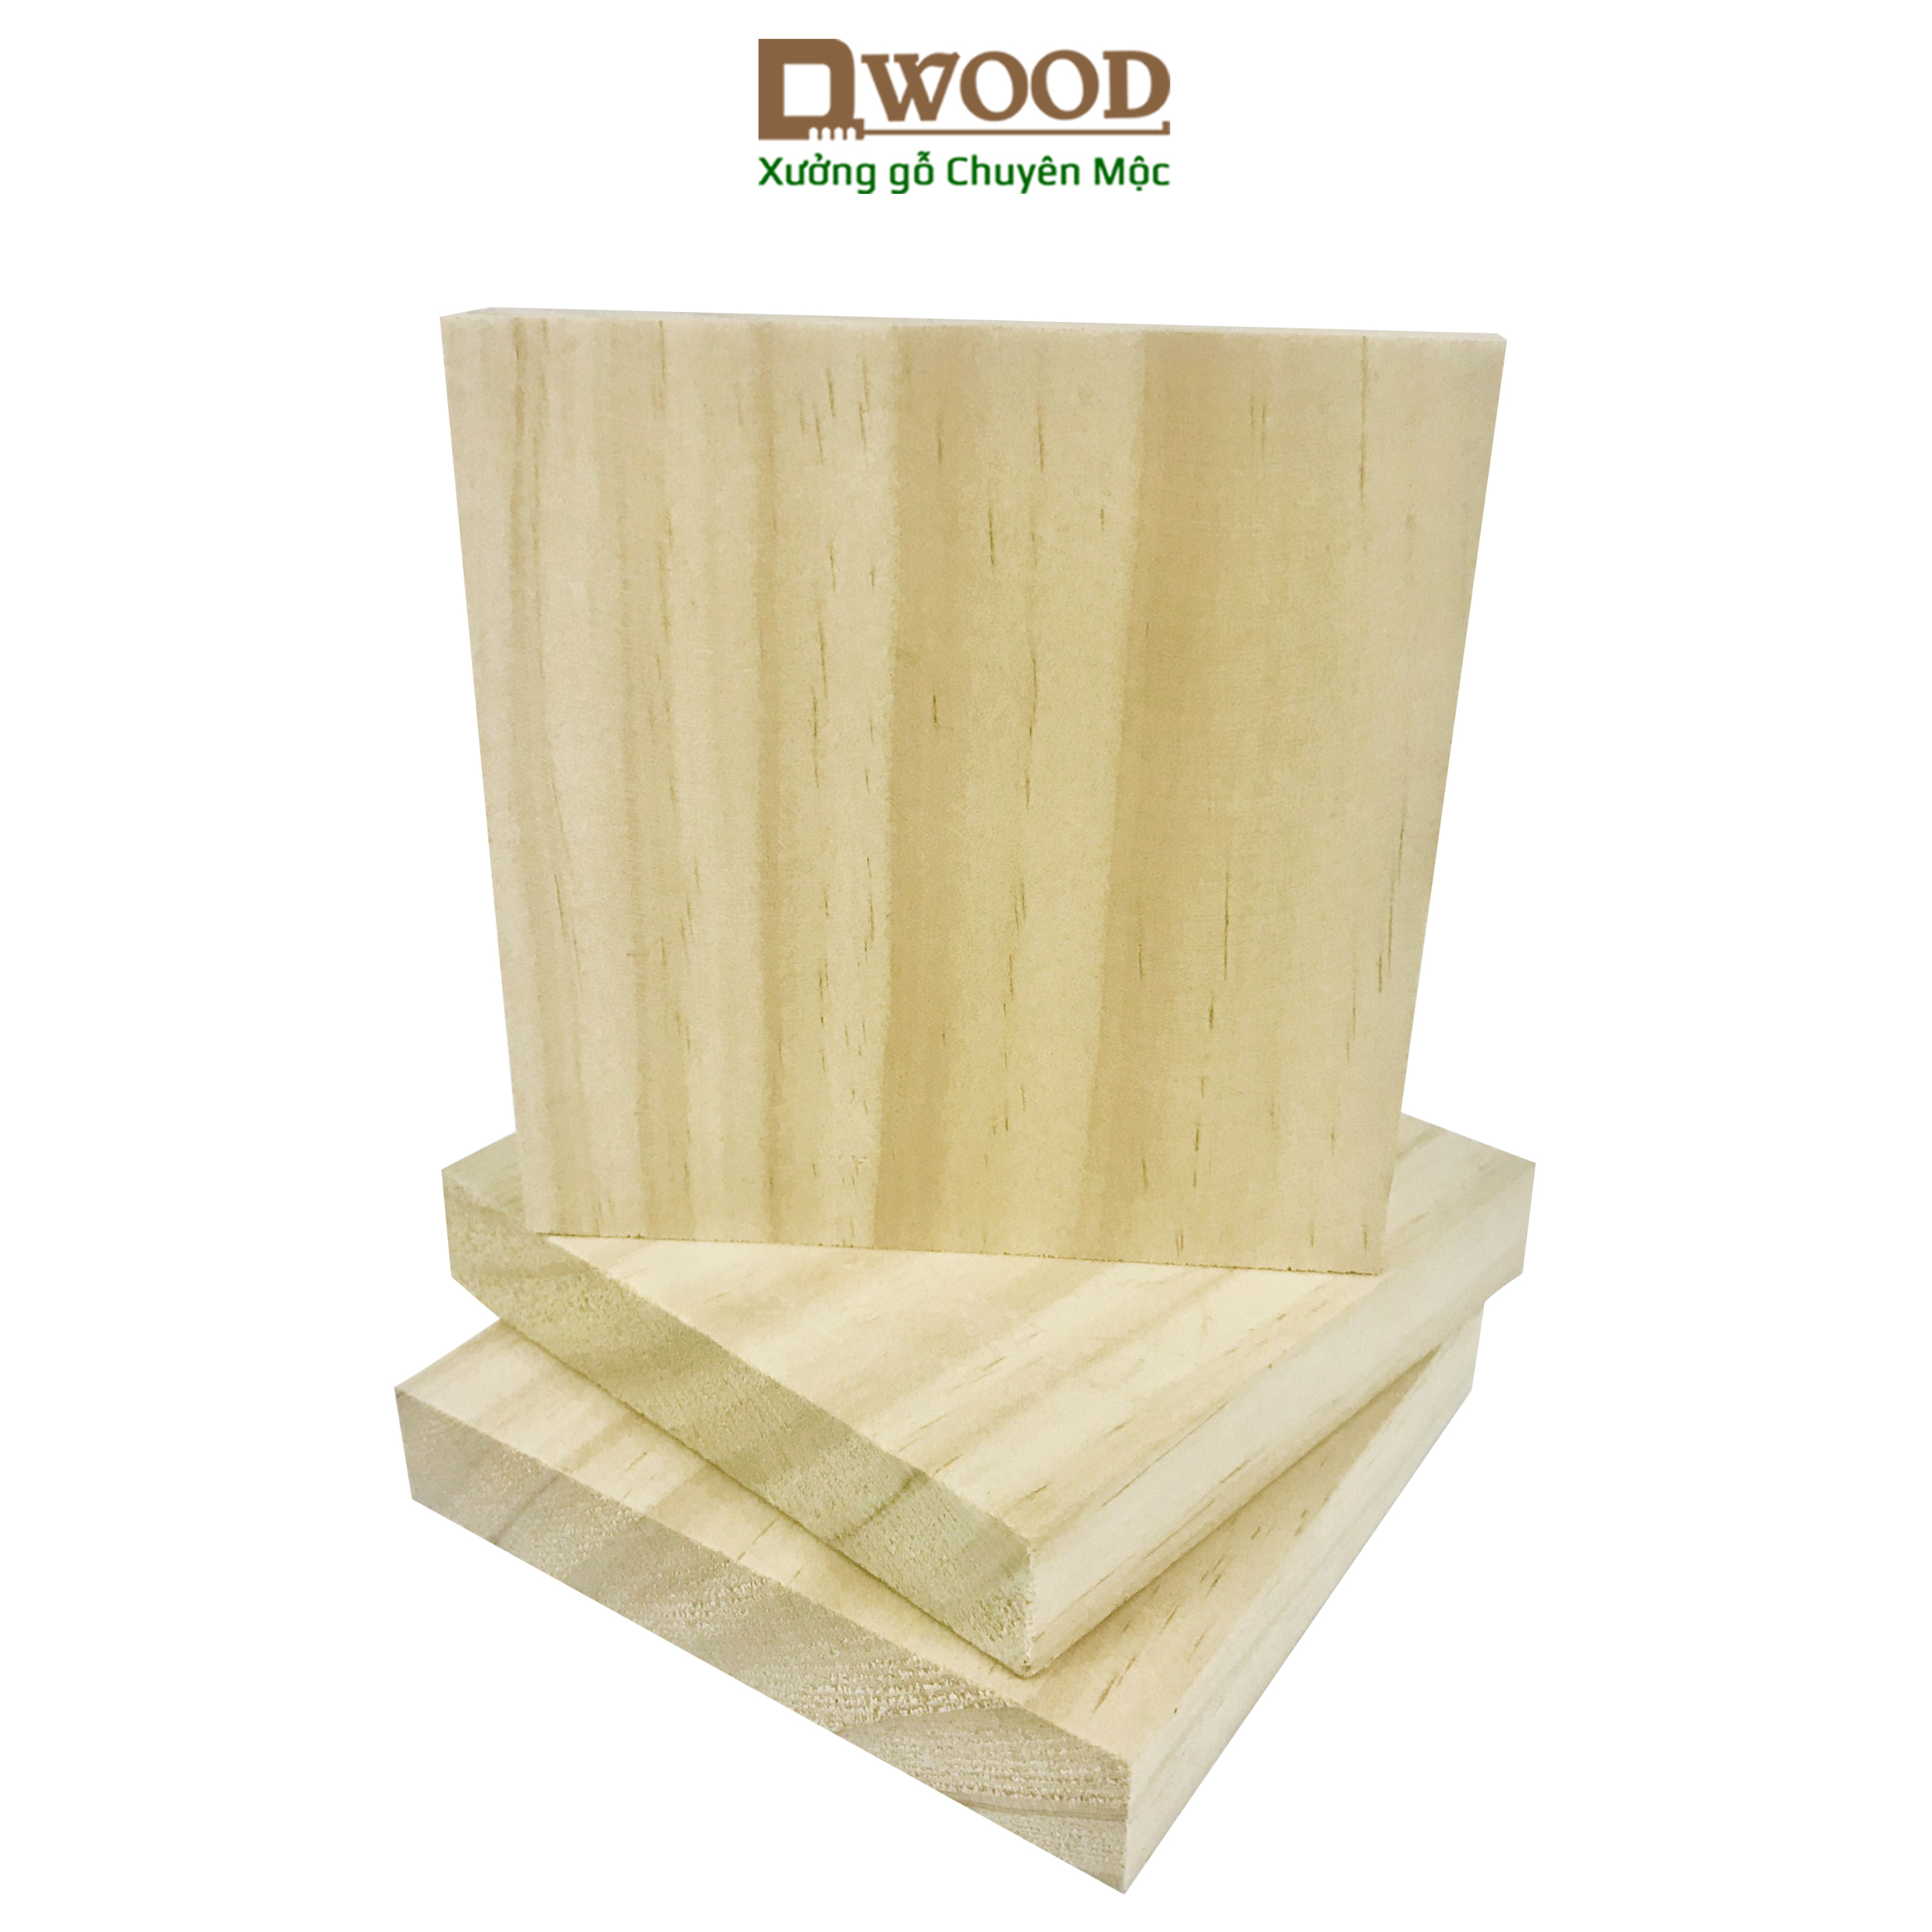 Miếng gỗ vuông Dwood gỗ thông mới nhập khẩu